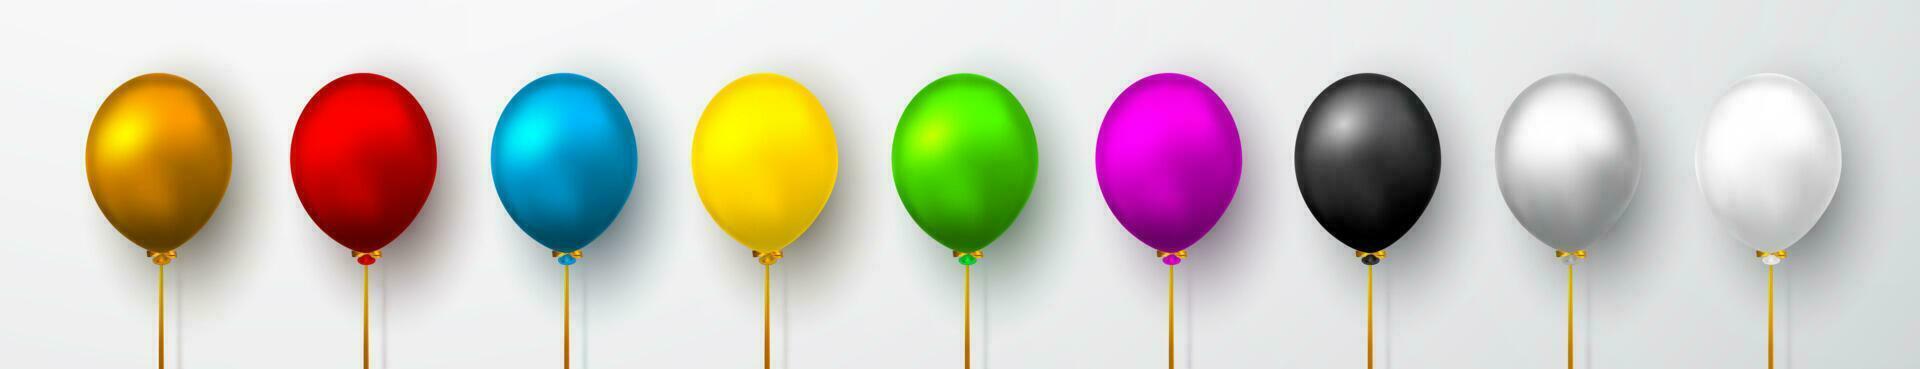 réaliste blanc, rouge, bleu, noir, or et gris des ballons sur blanc Contexte avec ombre. éclat hélium ballon pour mariage, anniversaire, des soirées. Festival décoration. vecteur illustration